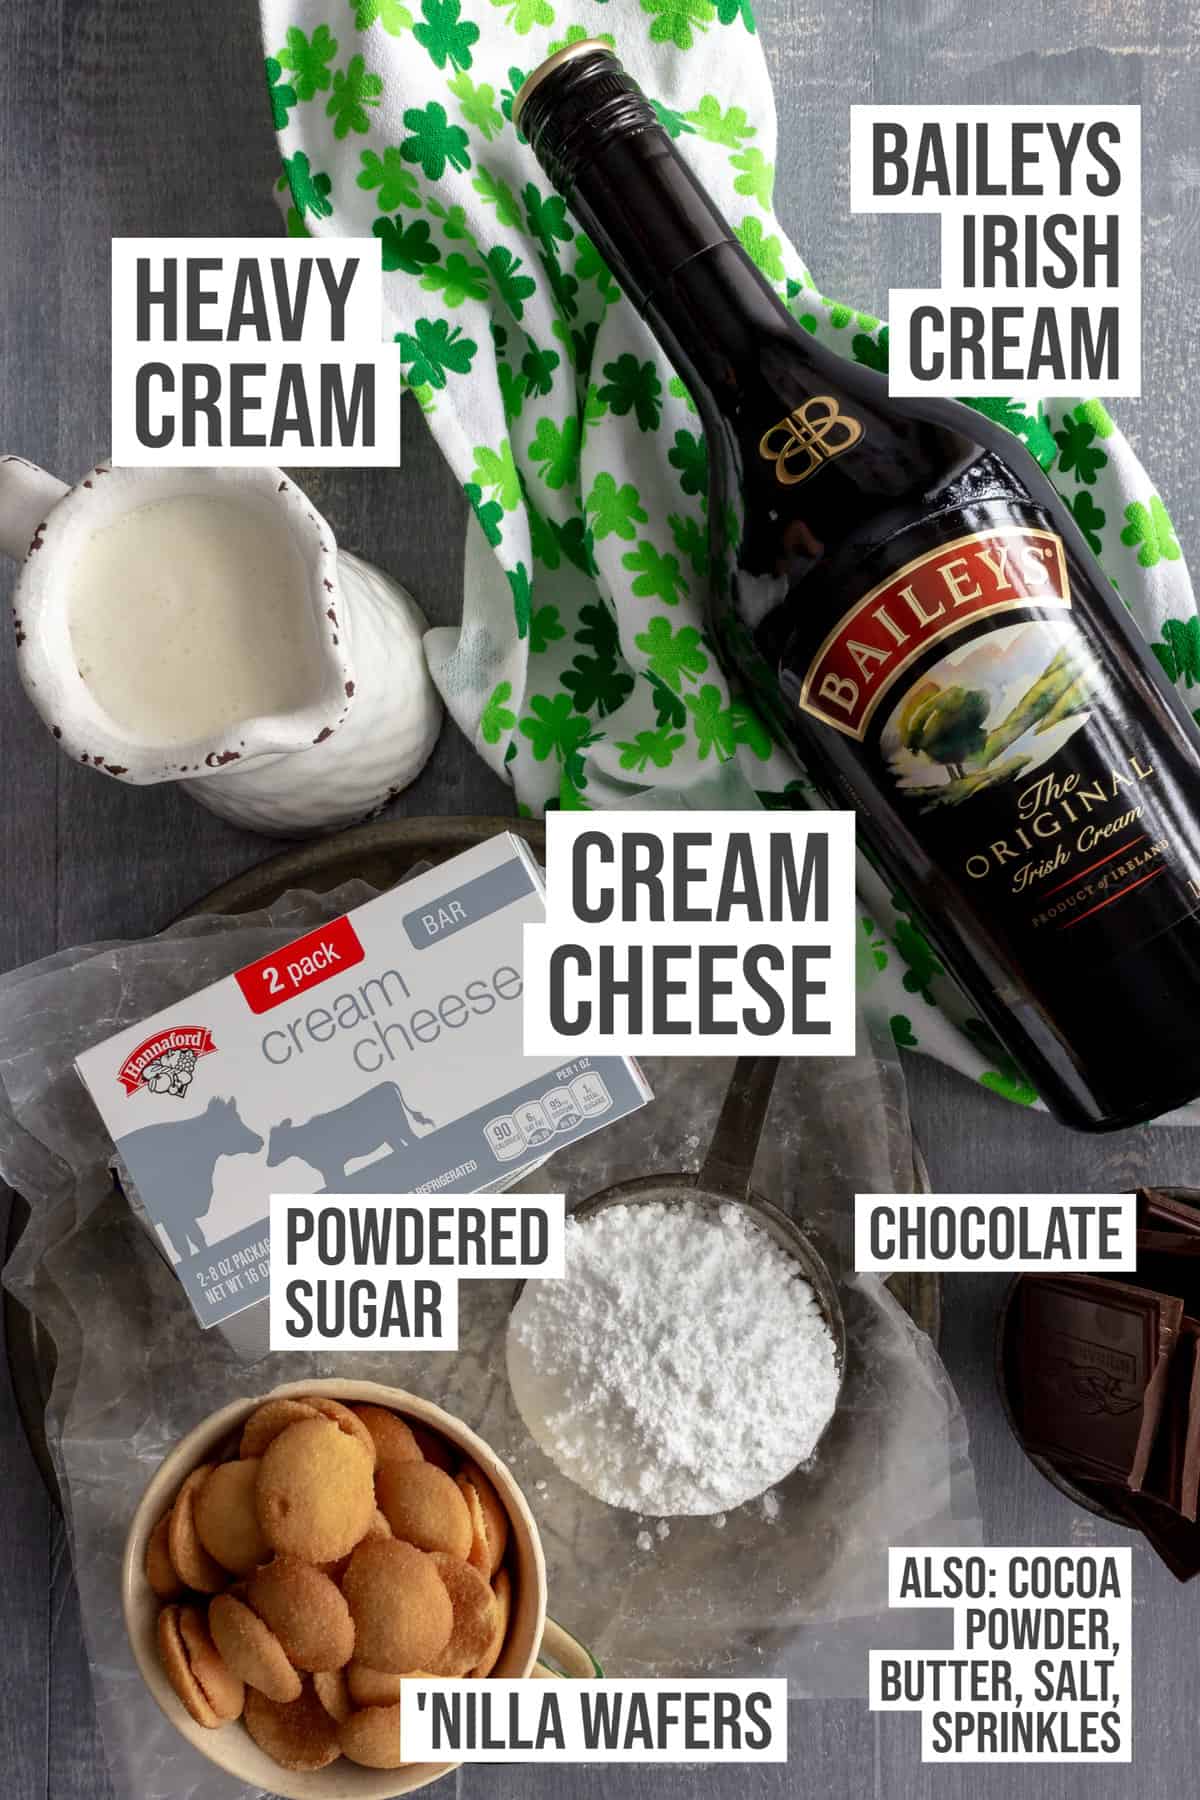 Ingredients: Cream, Baileys Irish Cream, cream cheese, chocolate, vanilla cookies, powdered sugar.